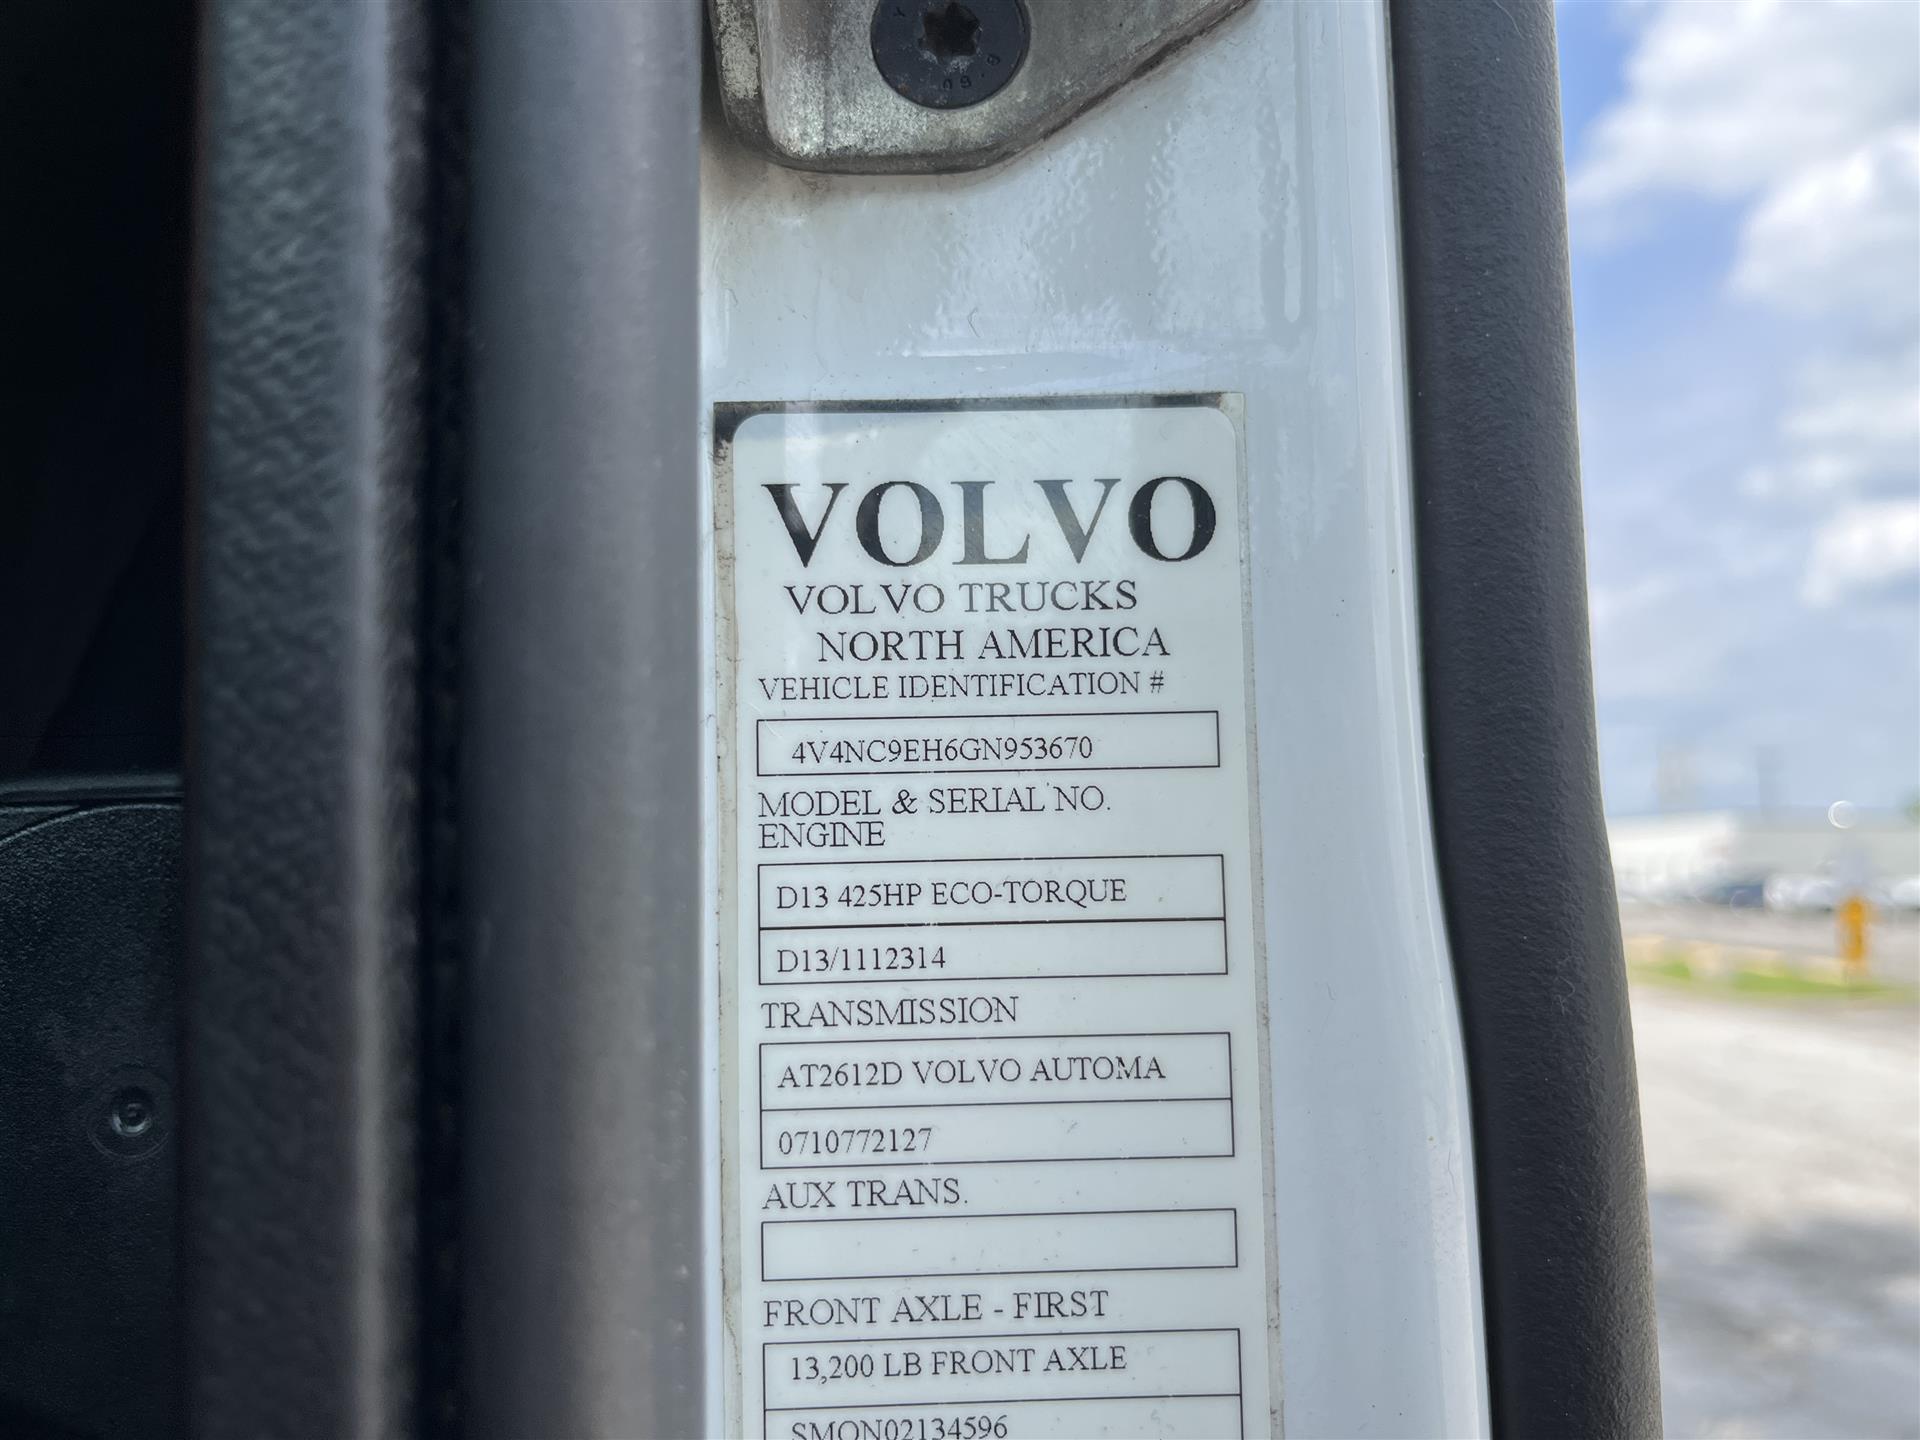 2016 Volvo VNL670 – 953670